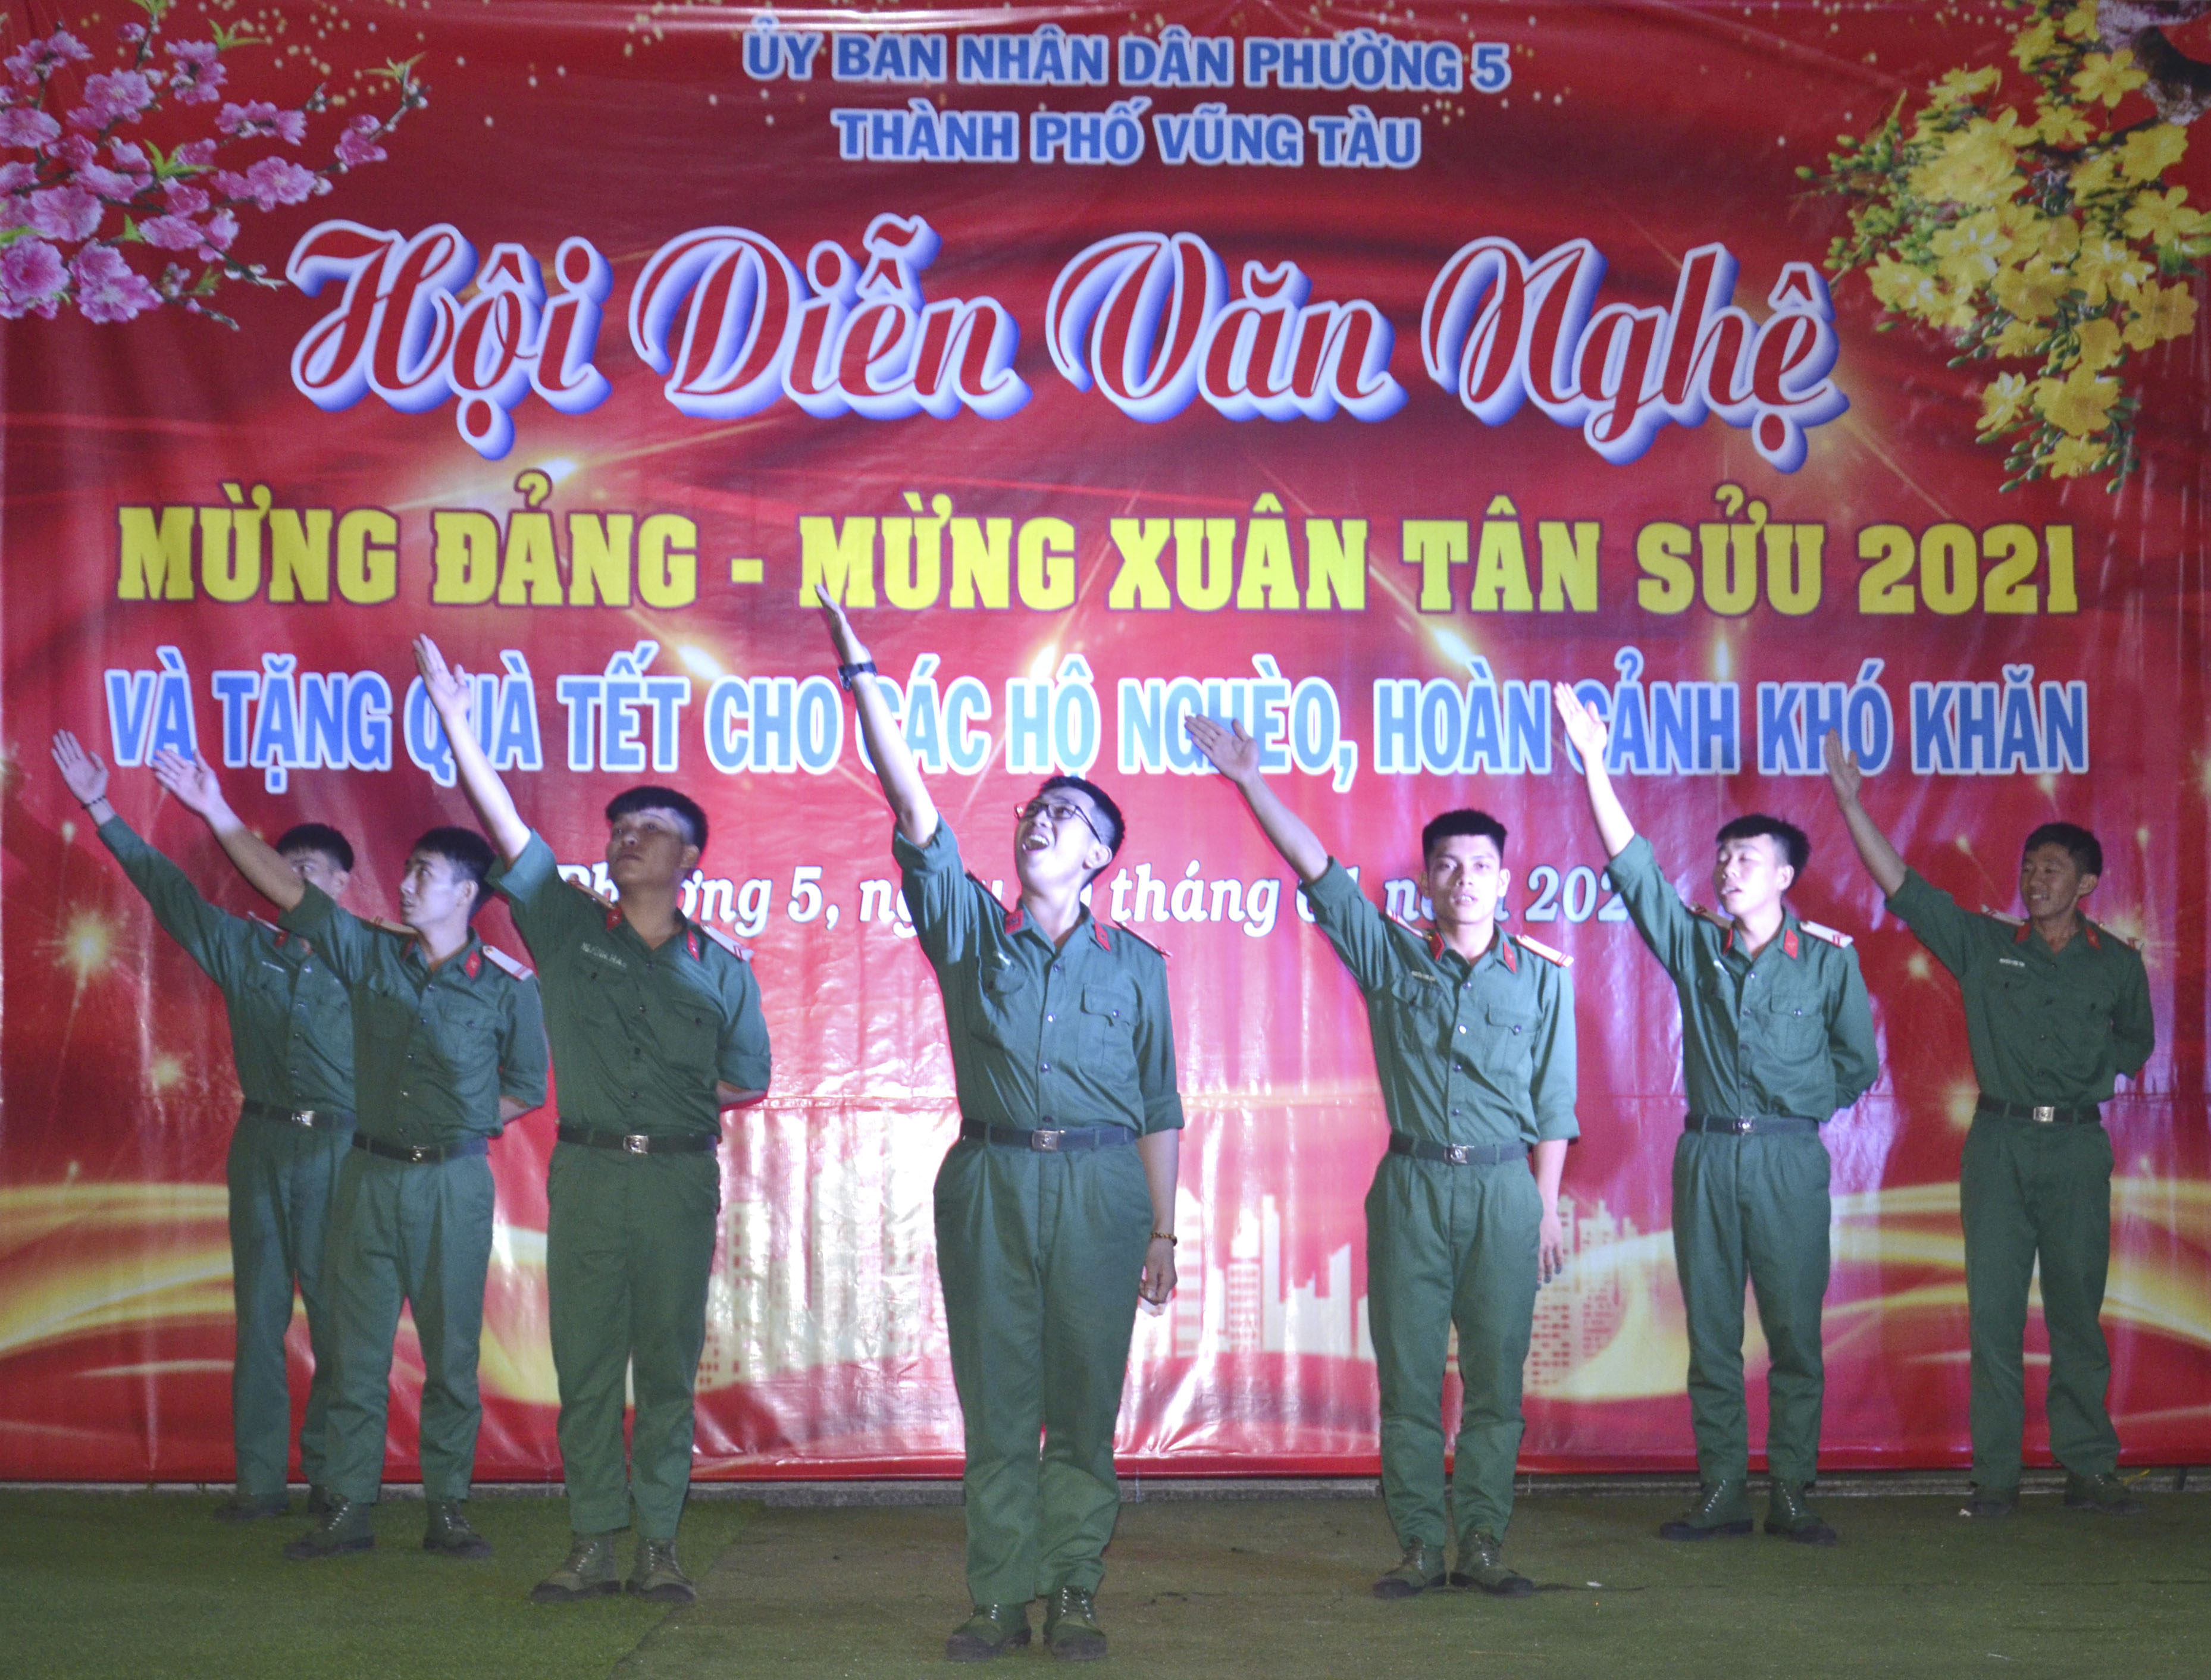 Tiết mục nhảy dân vũ “Việt Nam ơi” do các chiến sĩ Đại đội pháo binh 34 biểu diễn. 